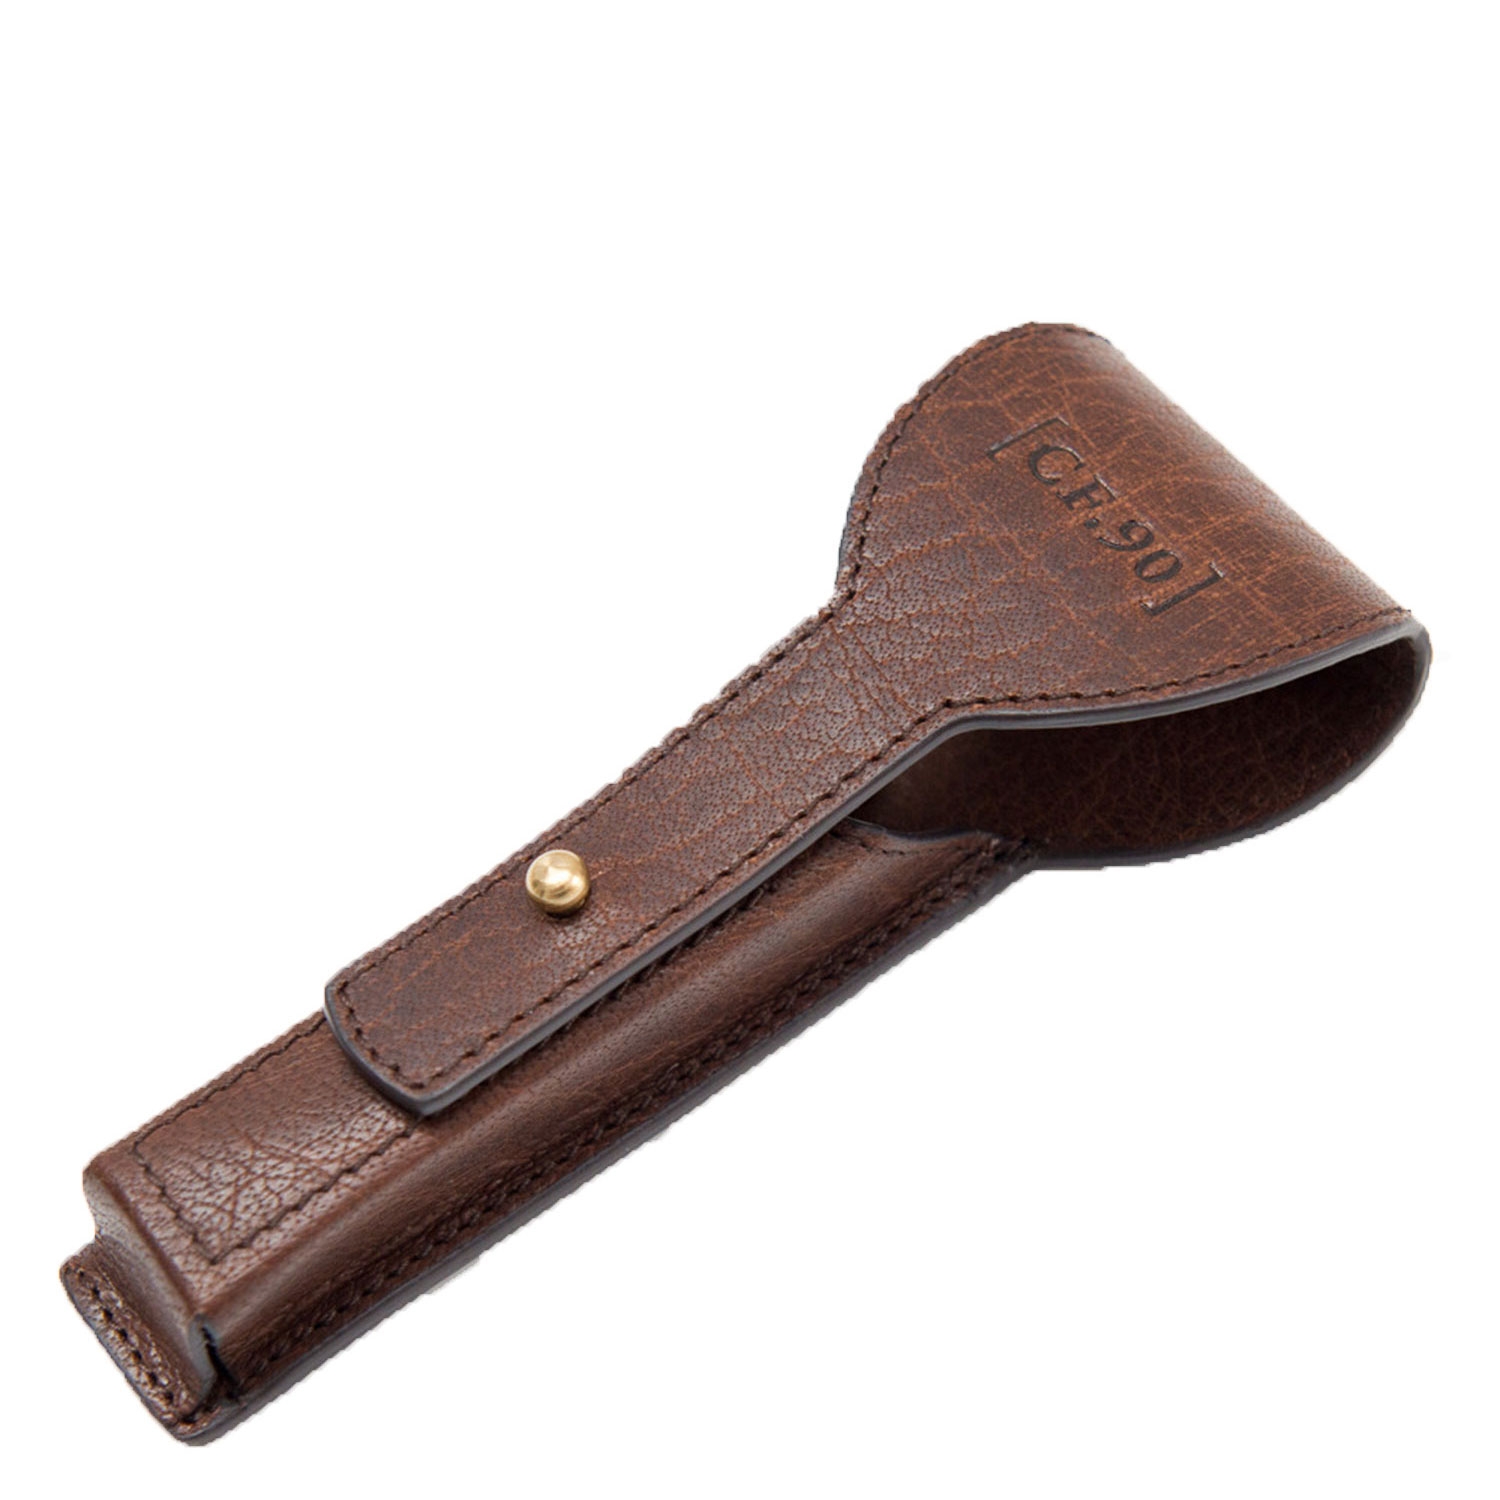 Produktbild von Capt. Fawcett Tools - Handcrafted Leather Razor Case